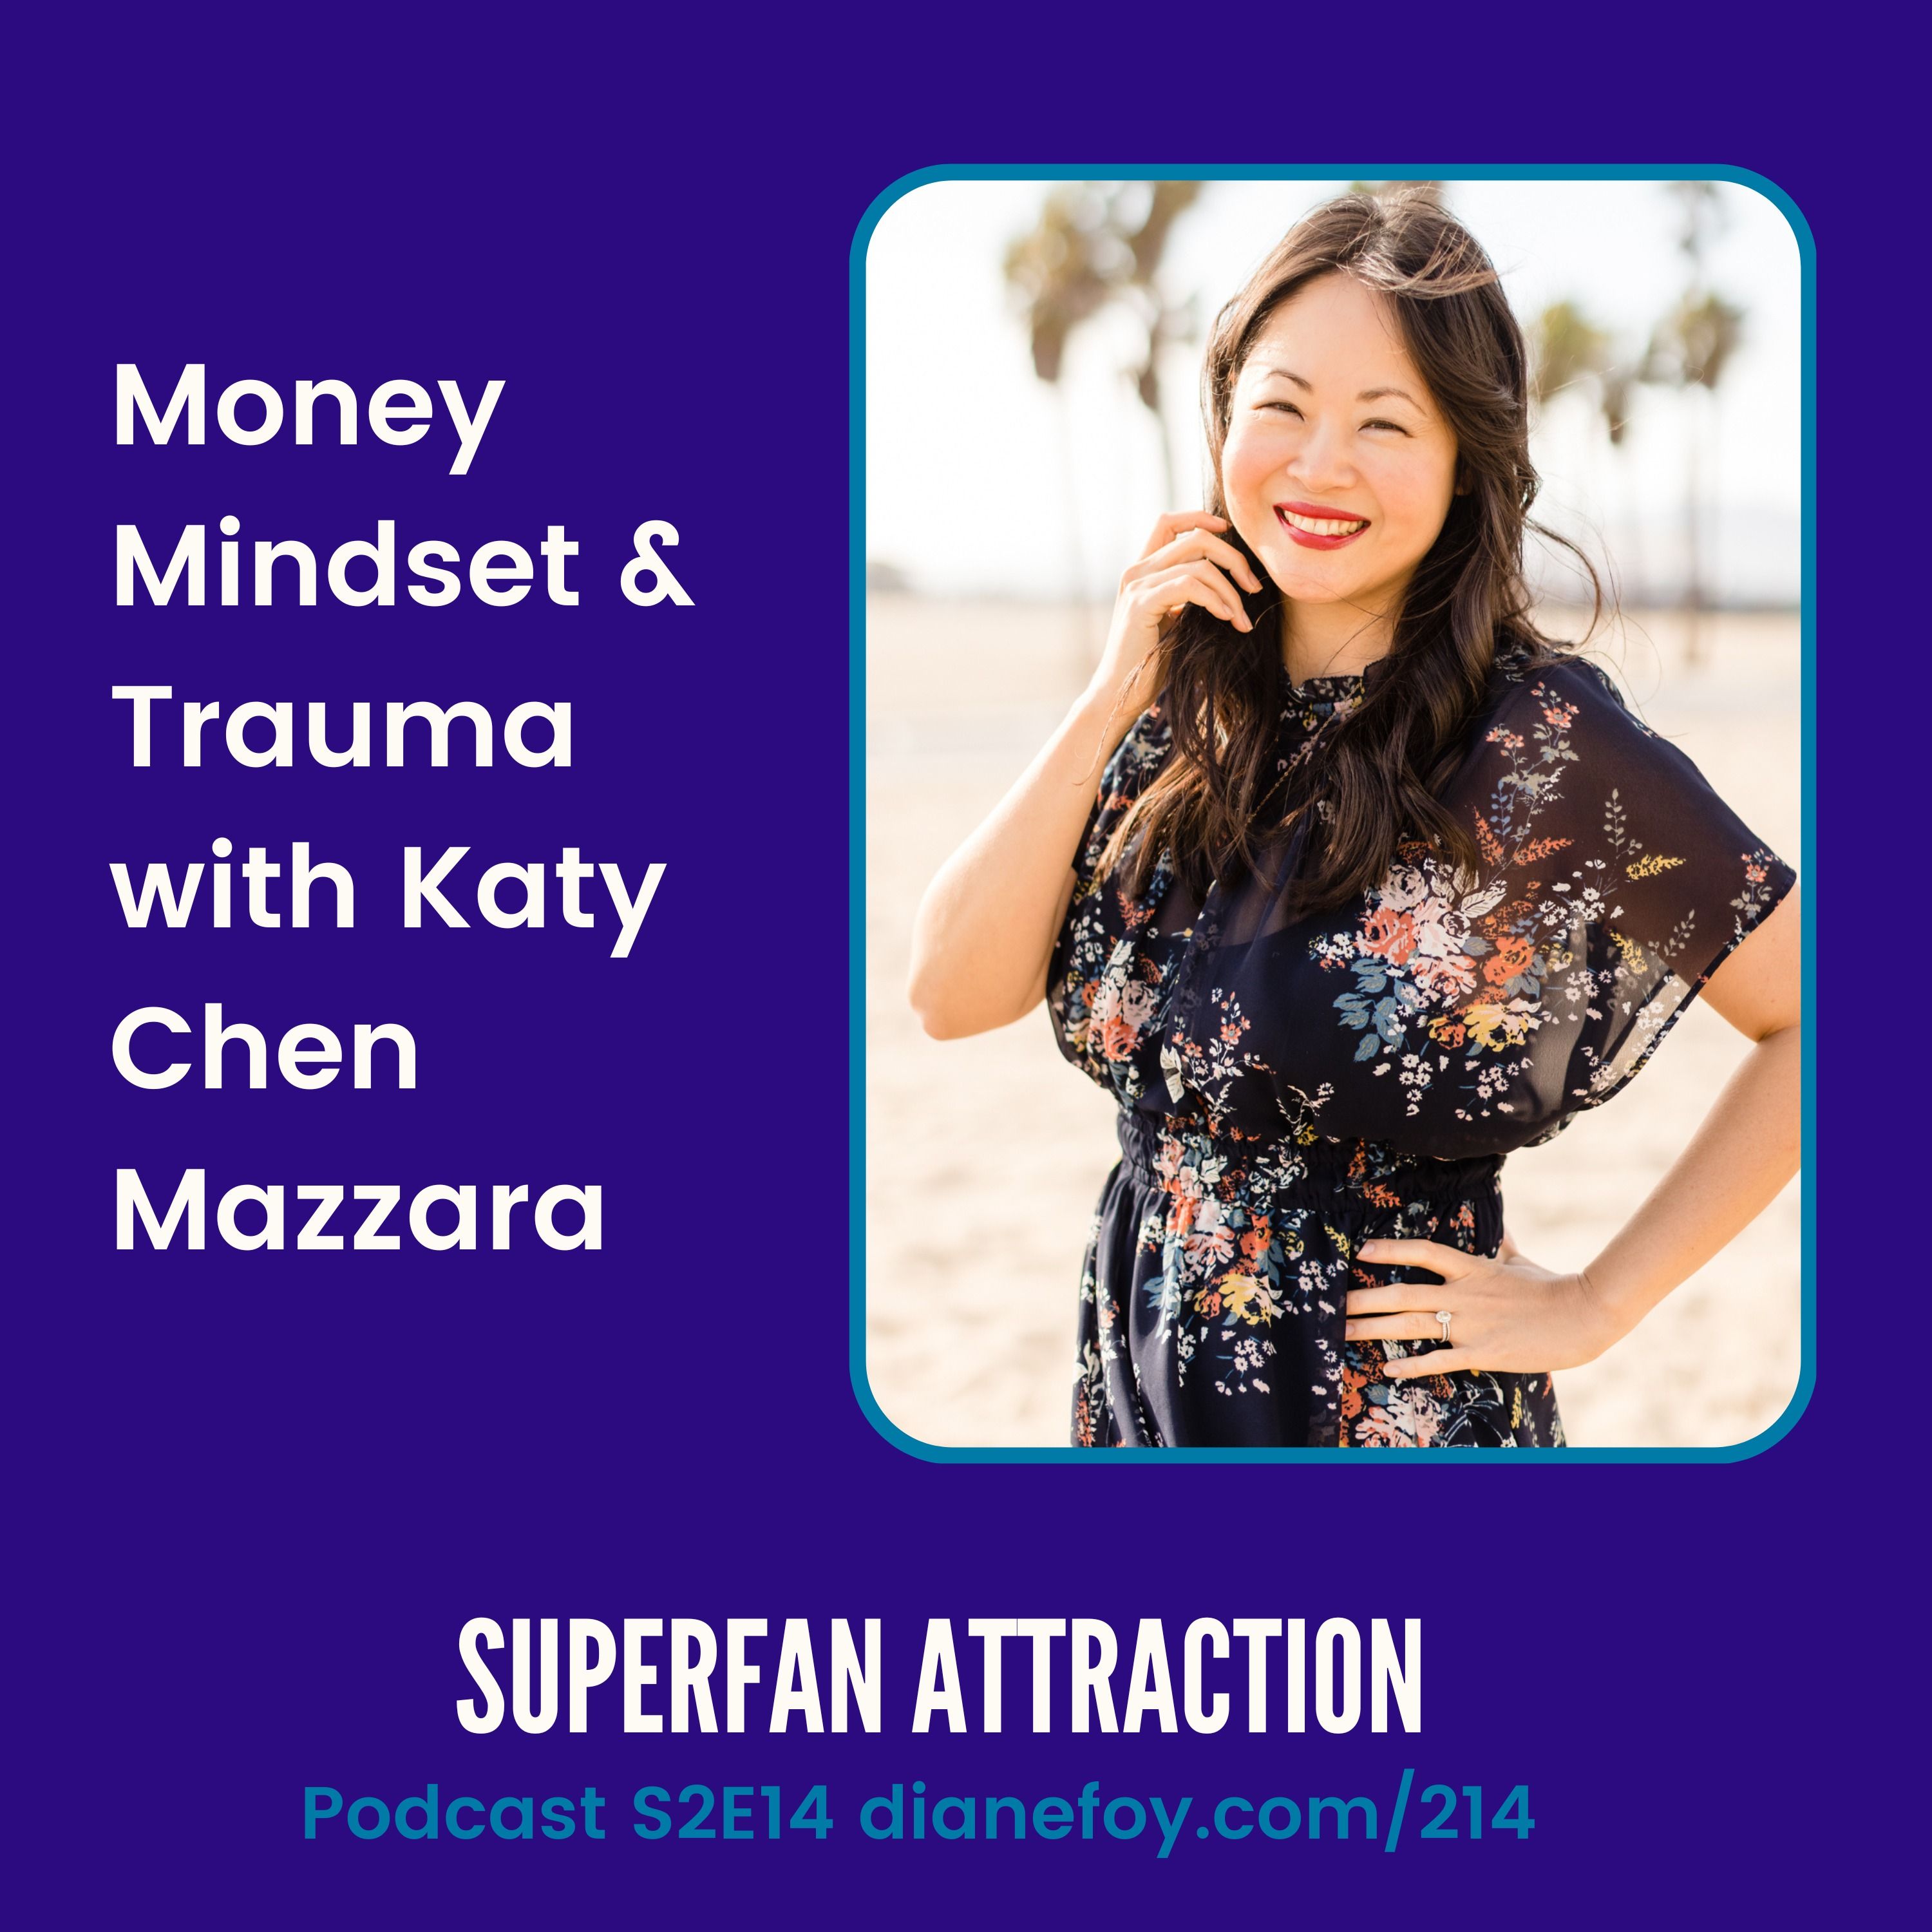 Money Mindset & Trauma with Katy Chen Mazzara hero artwork